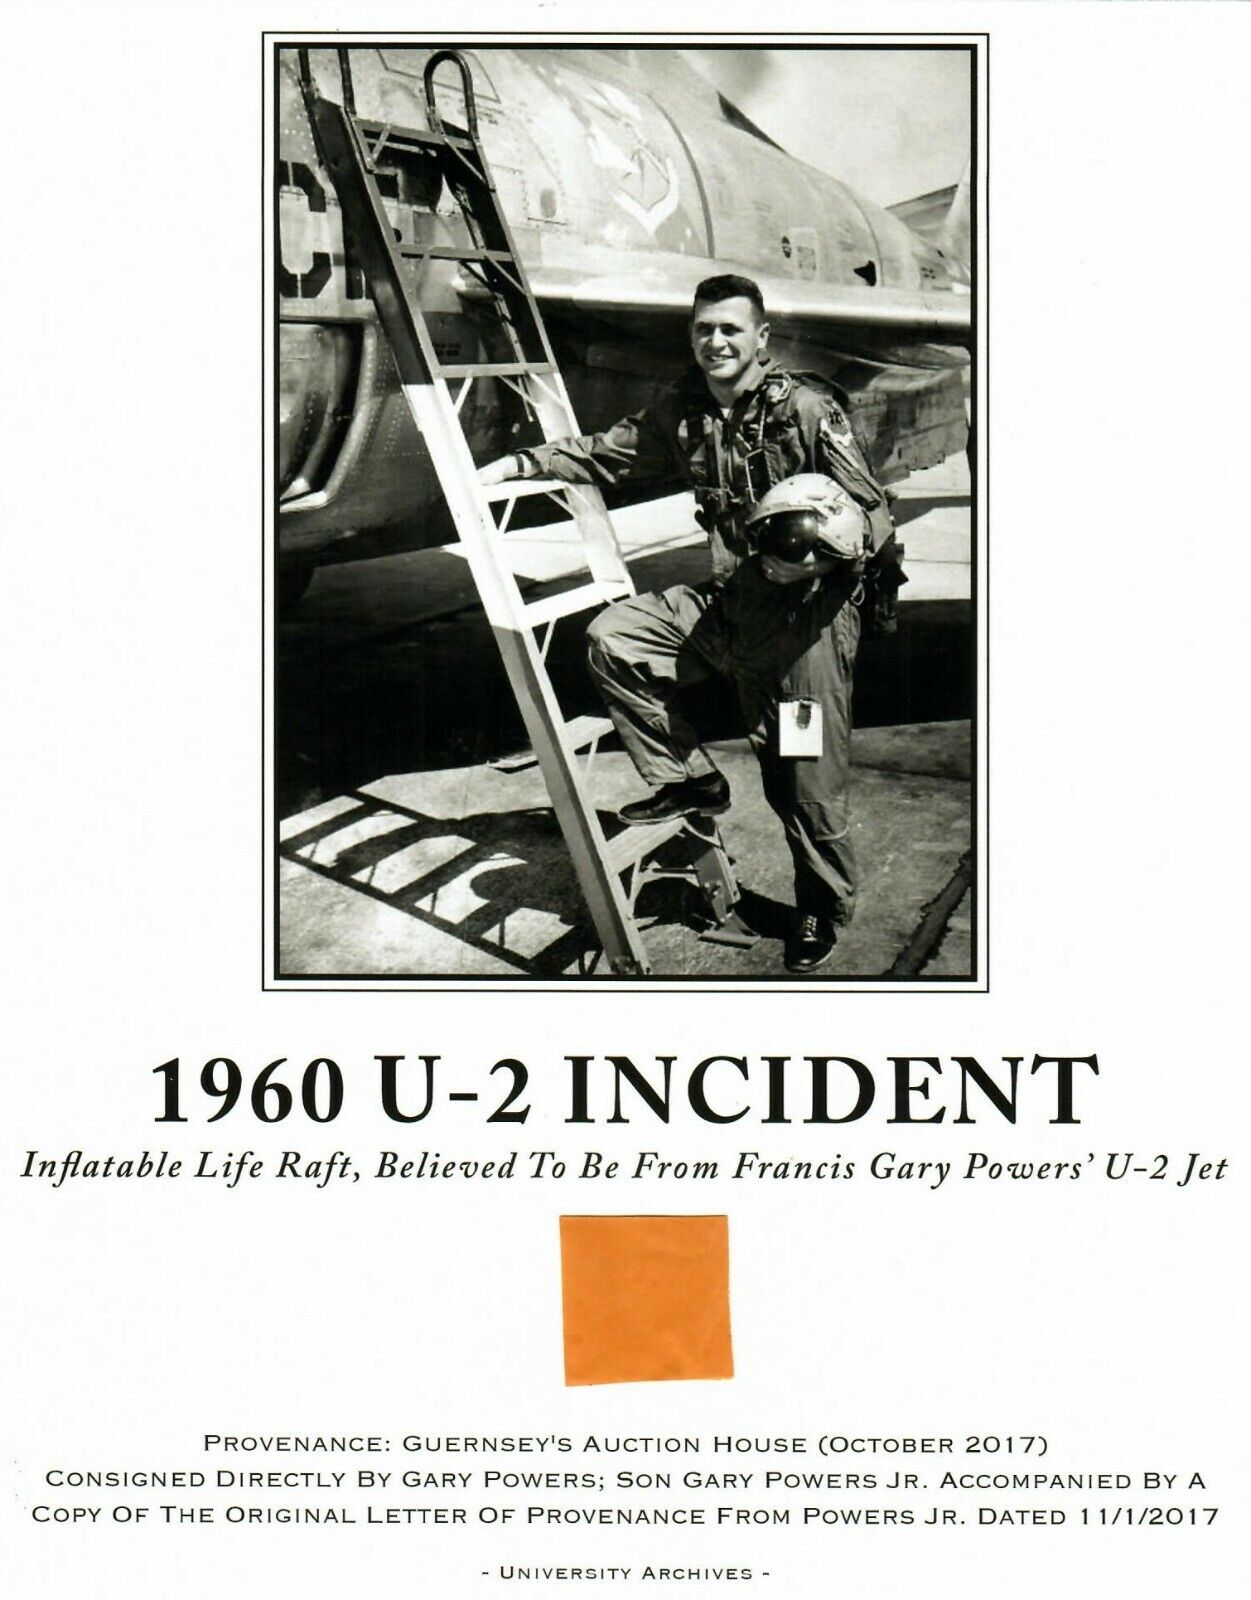 RARE “U-2 Incident